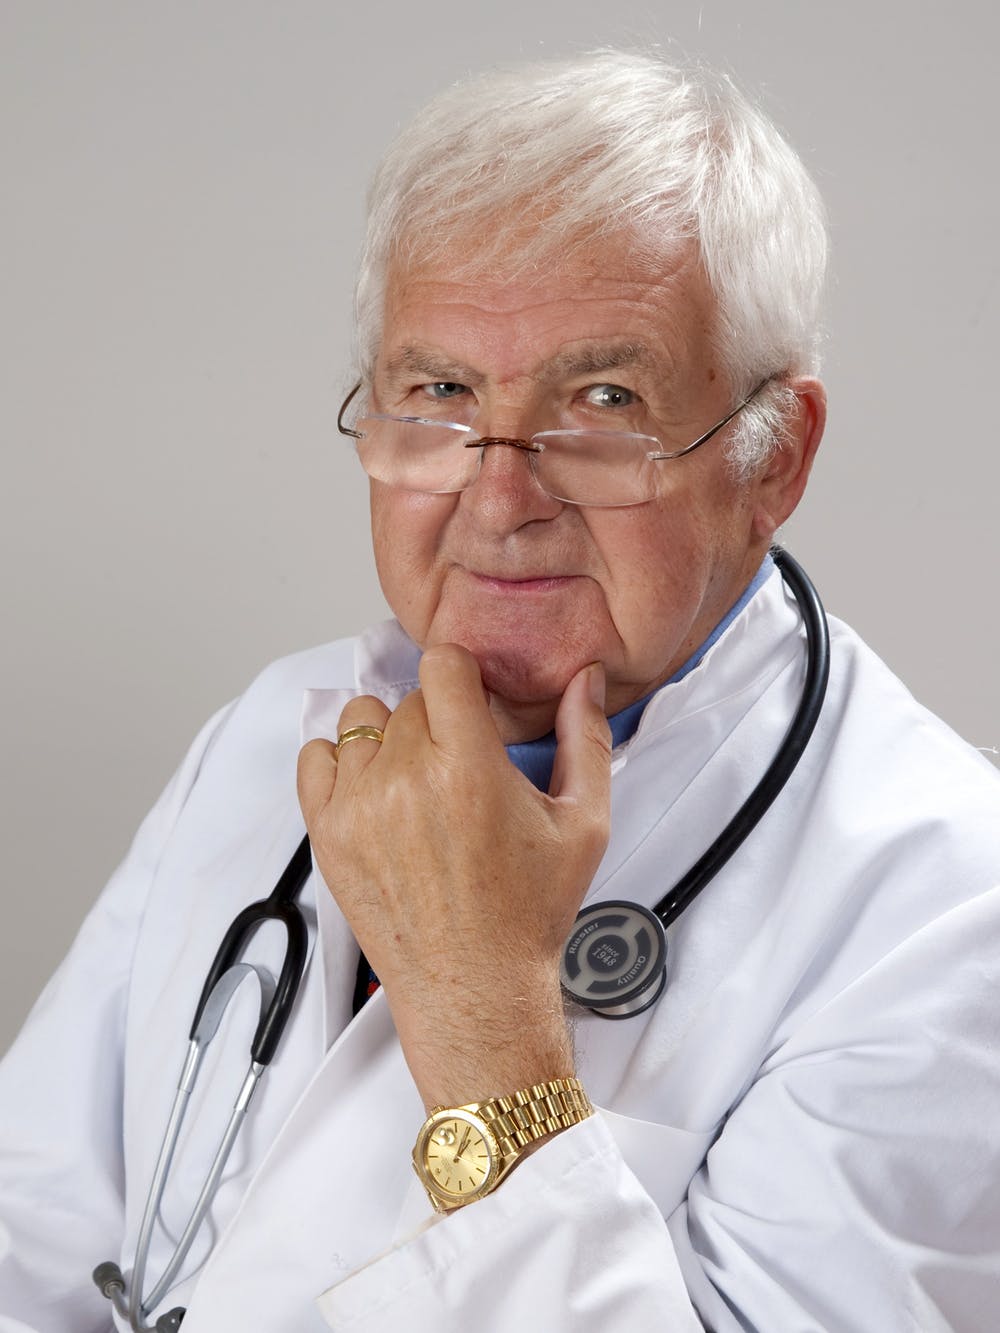 Médico anciano / Imagen tomada de: Pexels